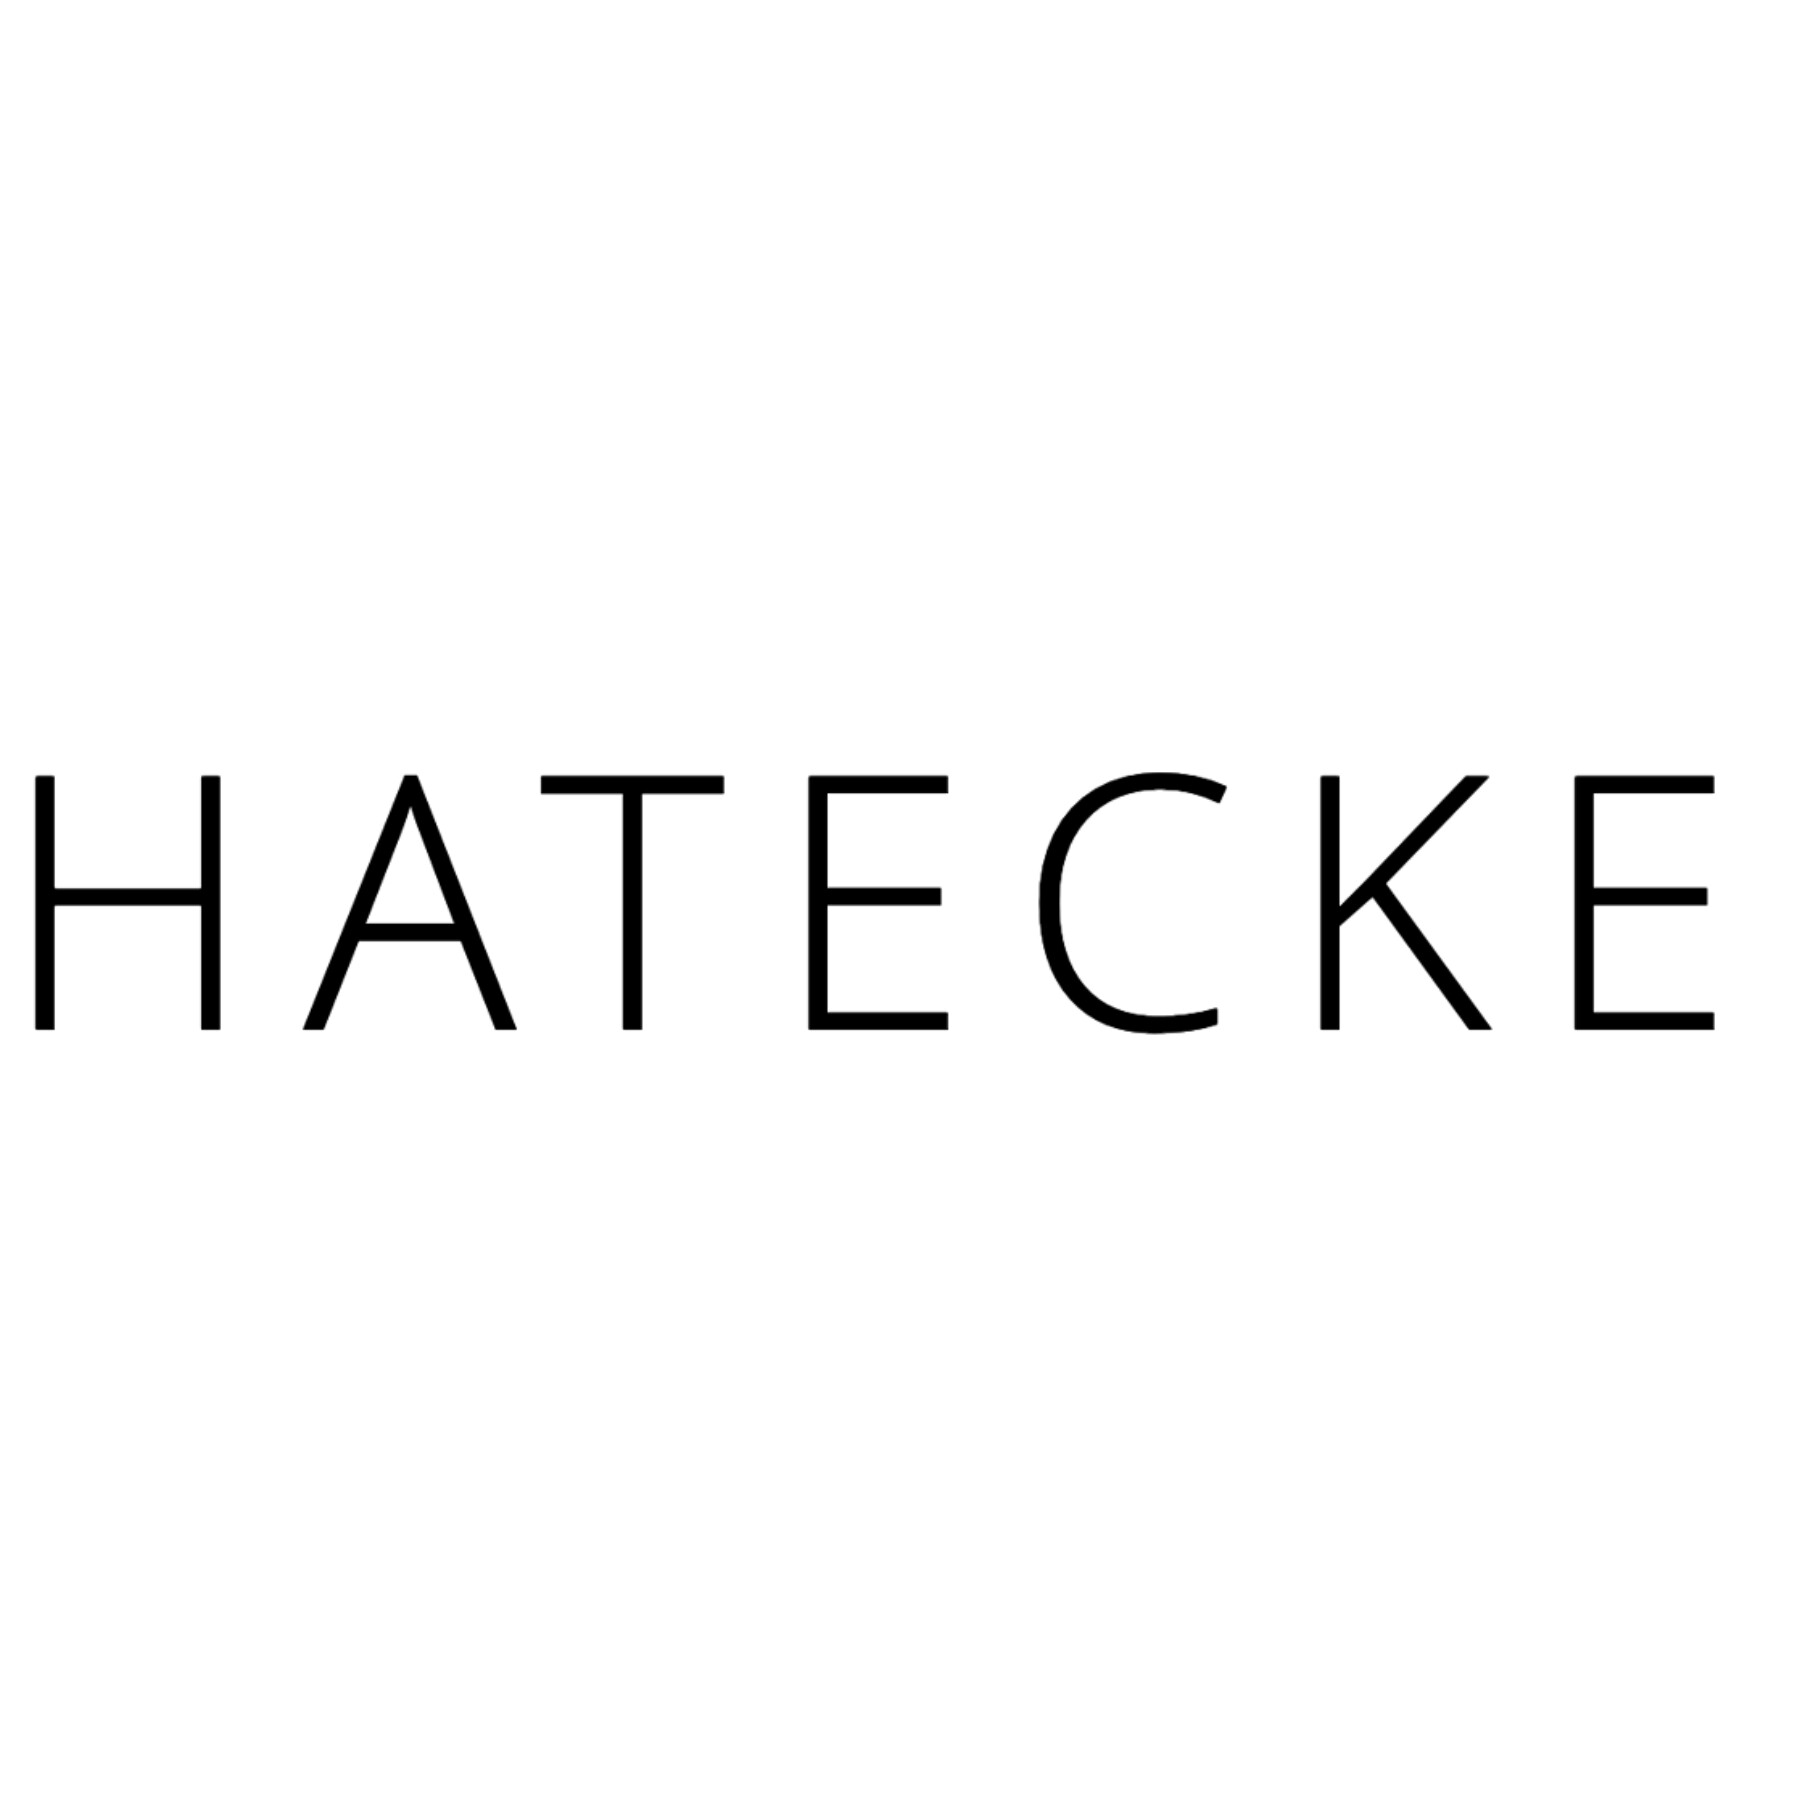 Hatecke